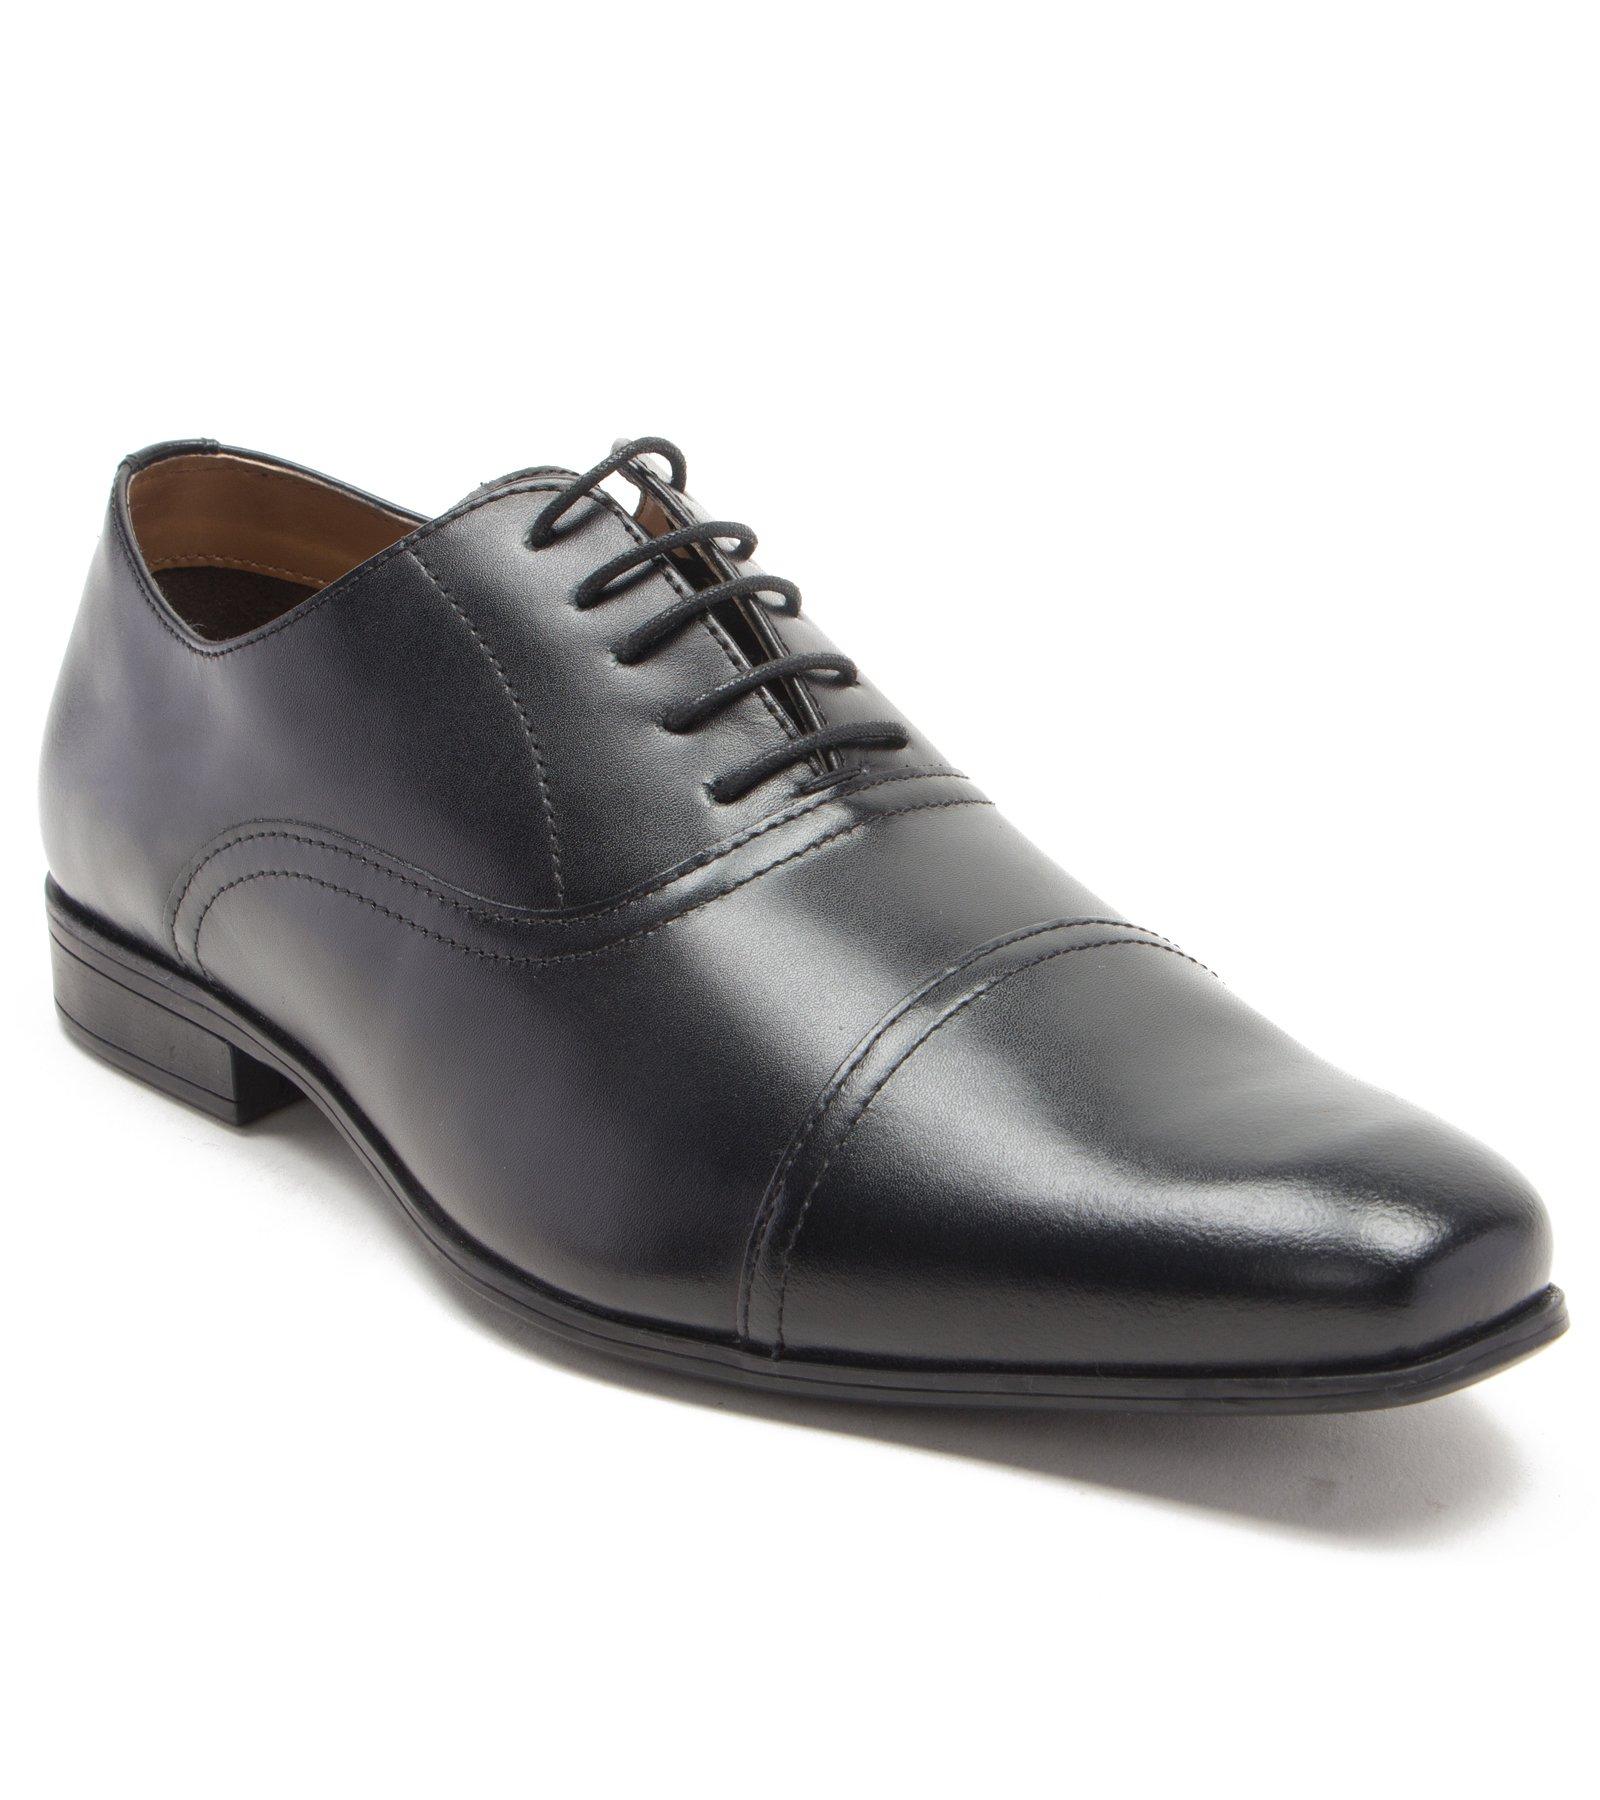 Классические оксфорды Mellor на шнуровке Официальная обувь Thomas Crick, черный туфли мужские классические кожаные деловые на шнуровке заостренный носок британская мода роскошные ручная работа весна лето 2021